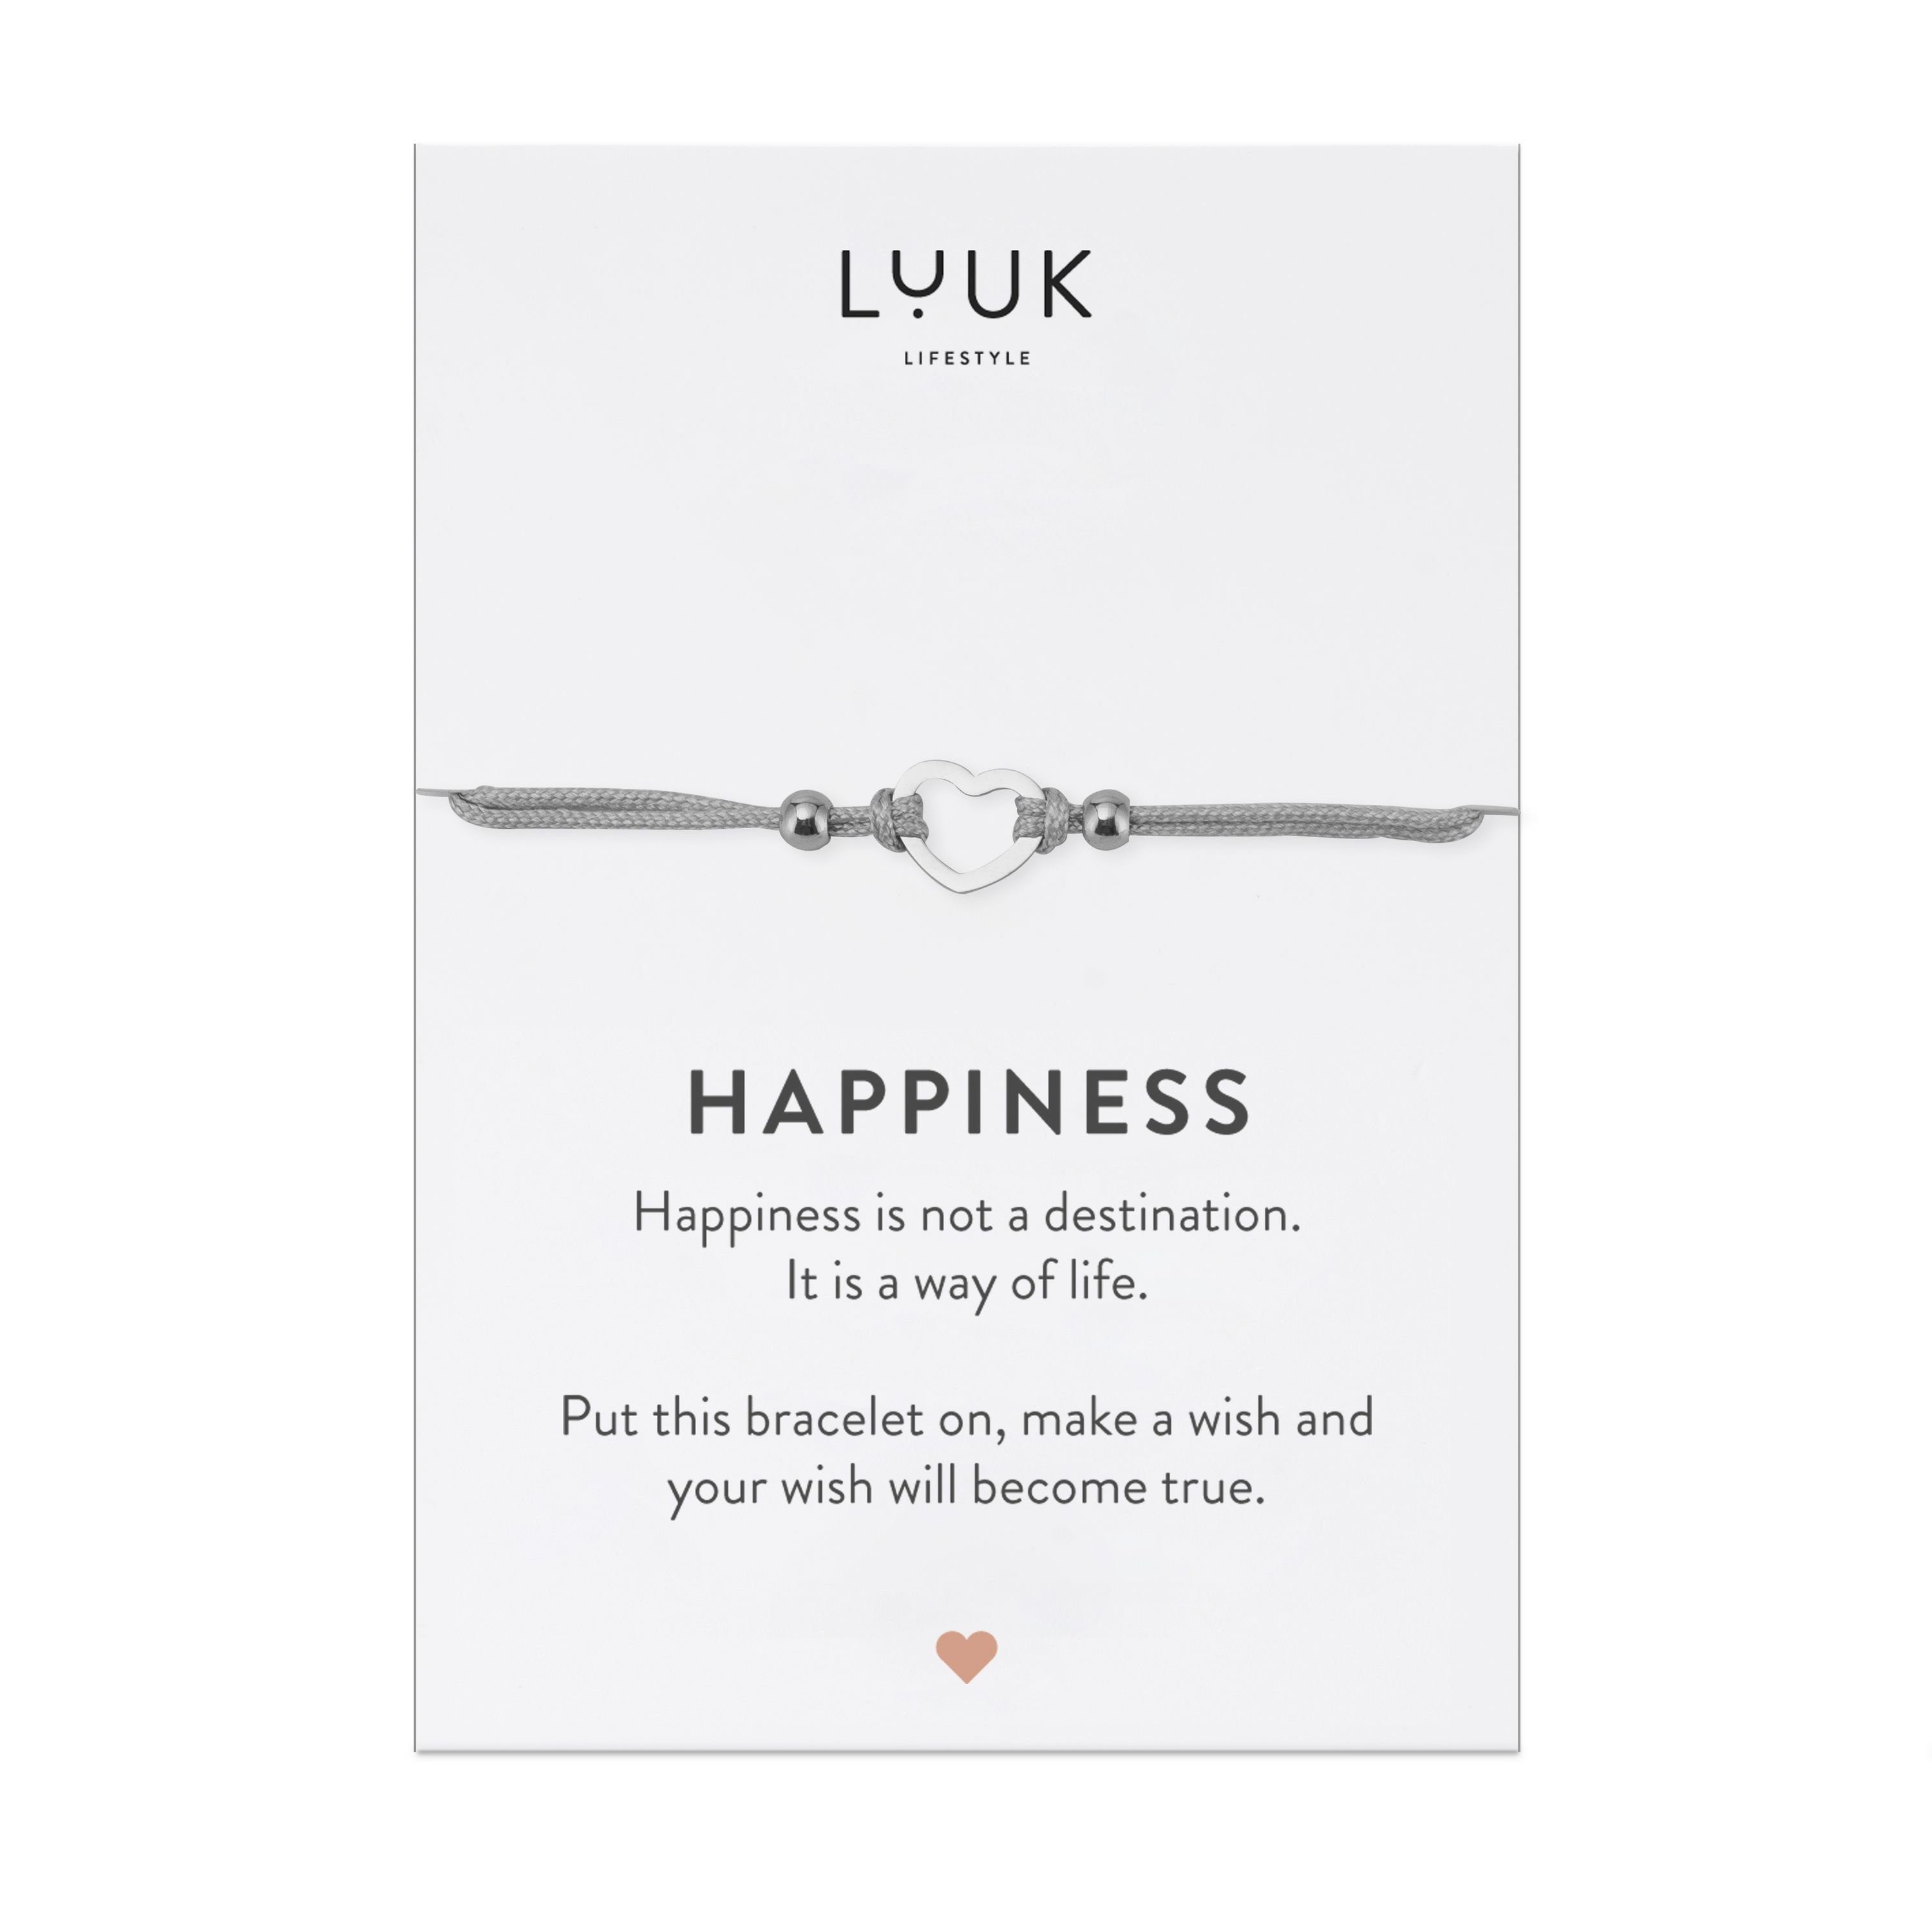 LUUK LIFESTYLE Freundschaftsarmband Herz, handmade, mit Happiness Spruchkarte Silber